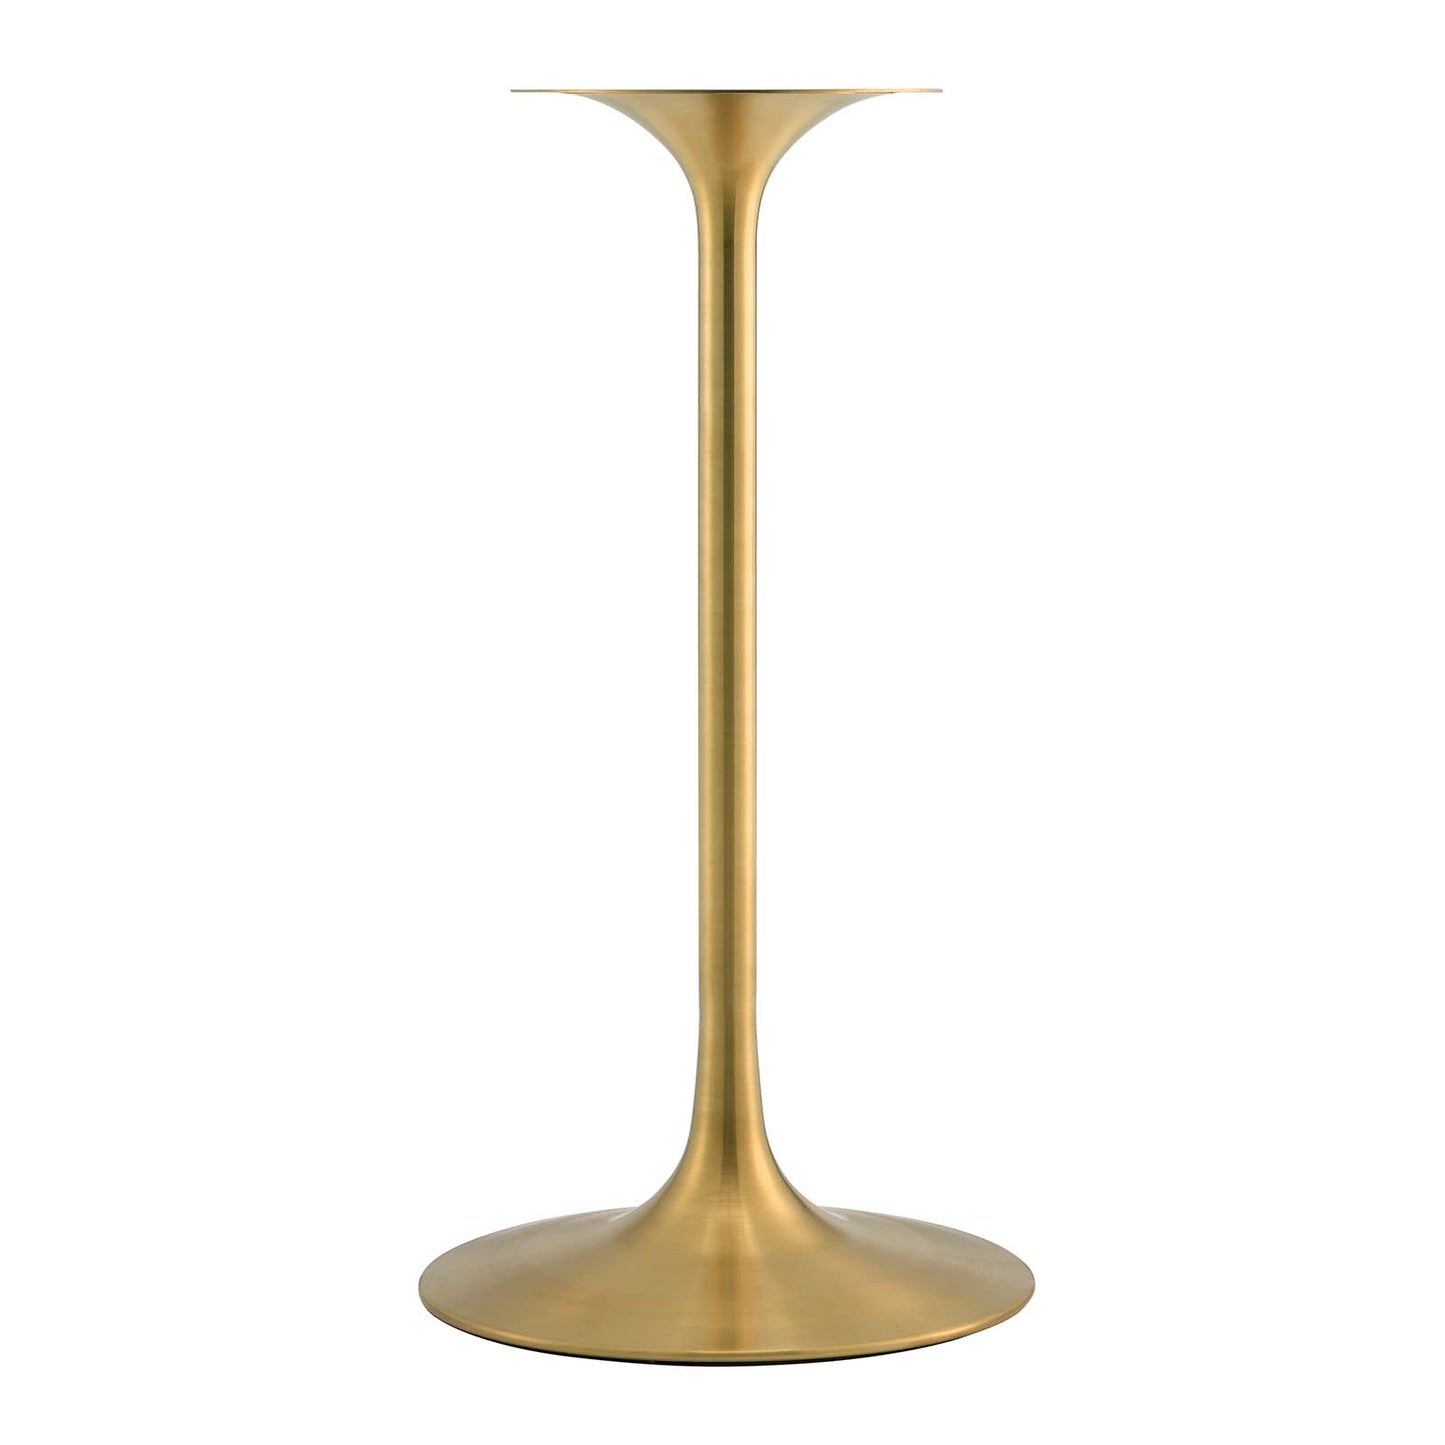 Lippa 28" Round Terrazzo Bar Table Gold White EEI-5708-GLD-WHI